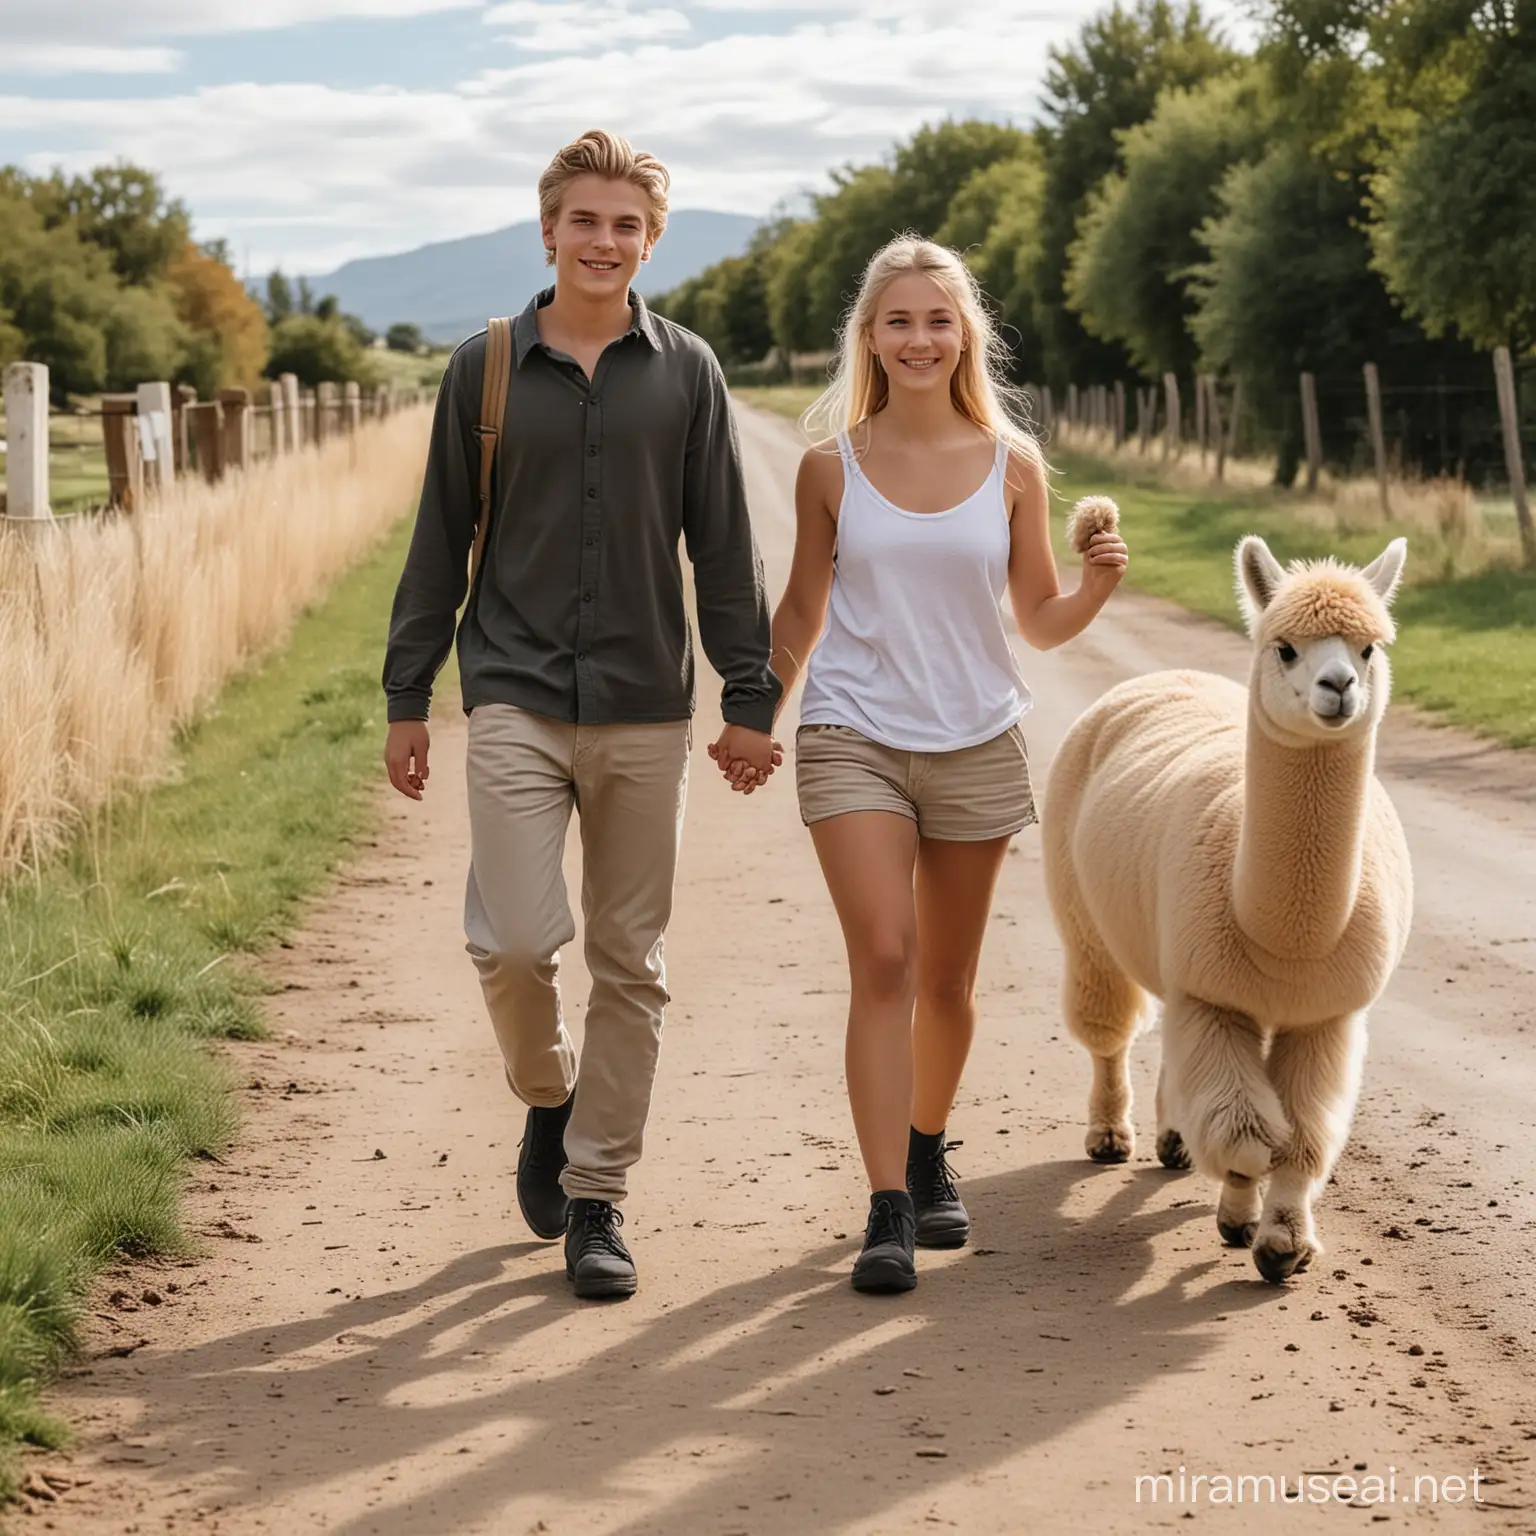 Ein blonder Junge, 15 Jahre, mit Dutt und ein blondes Mädchen mit langen Haaren gehen spazieren und freuen sich. Neben ihnen läuft ein Alpaka.